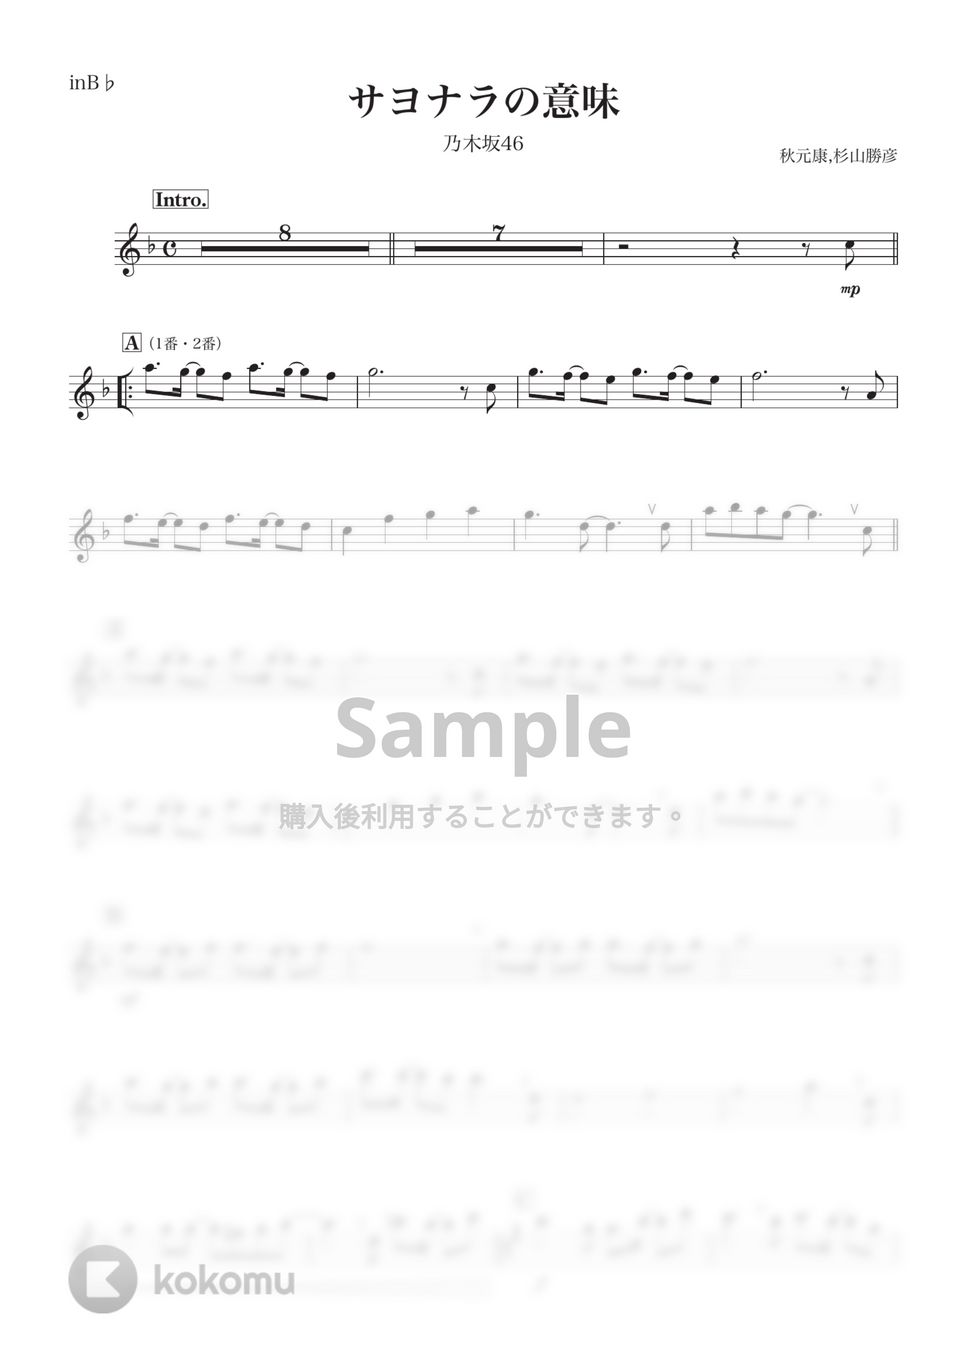 乃木坂46 - サヨナラの意味 (B♭) by kanamusic